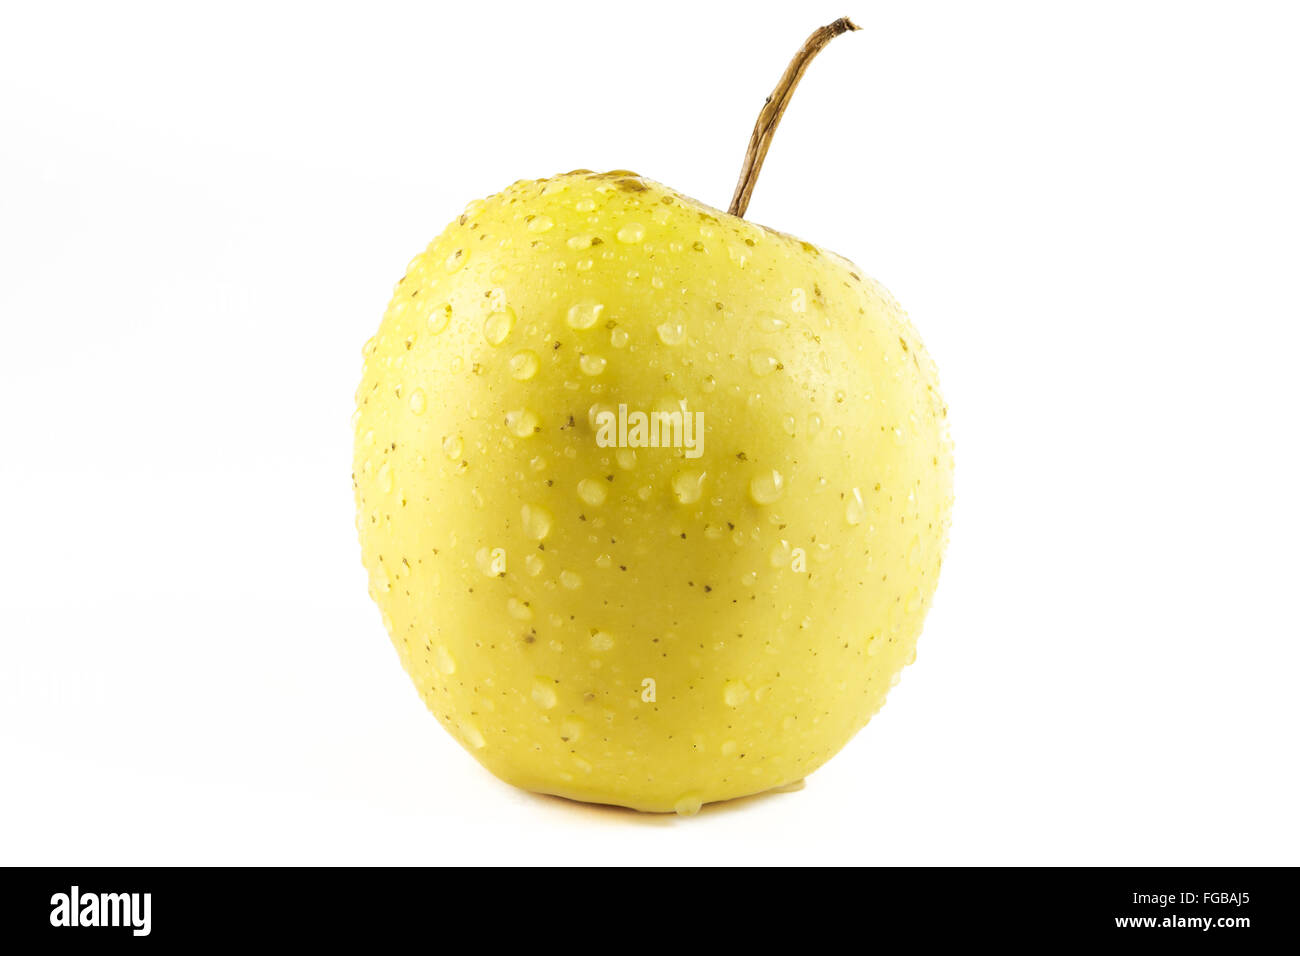 Apfel Golden delicious isoliert auf weißem Hintergrund Stockfoto